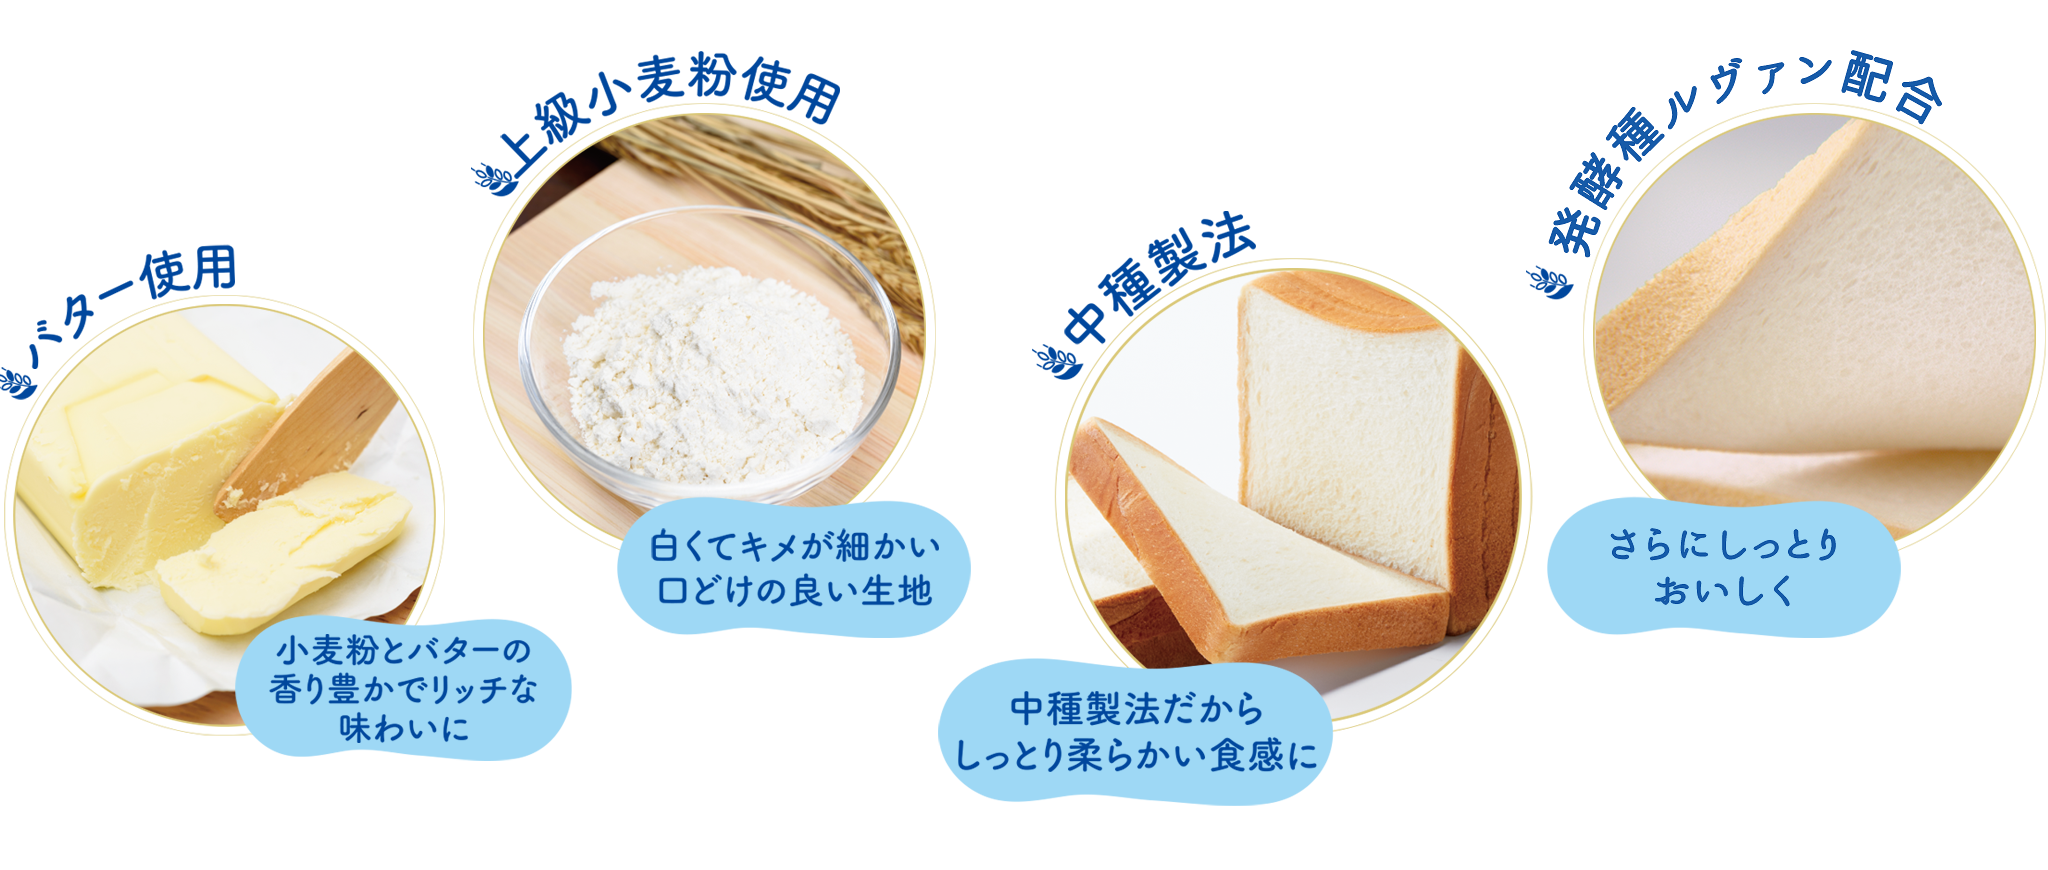 上級小麦粉使用、バター使用、中種製法